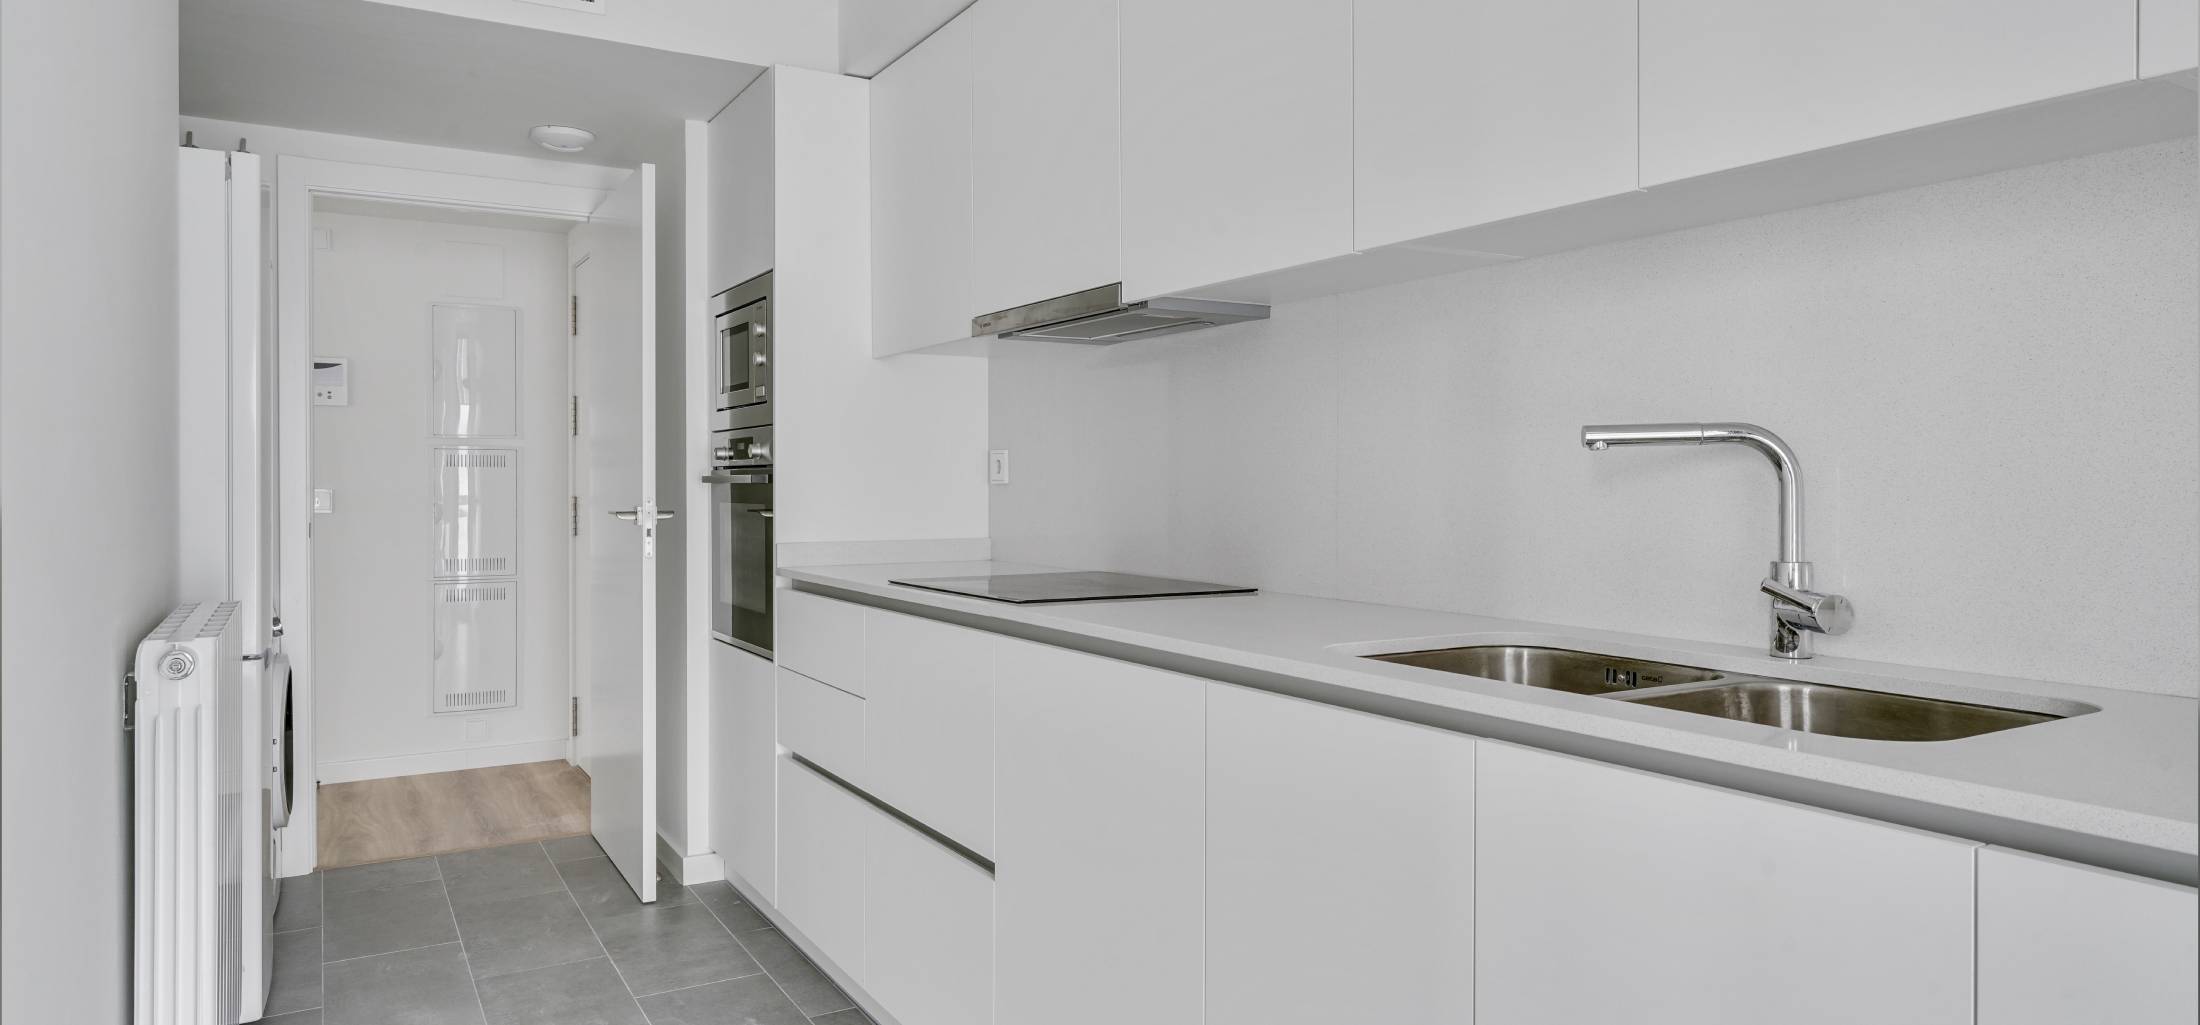 Kitchen new construction | Zona Franca | Bialto | Barcelona 